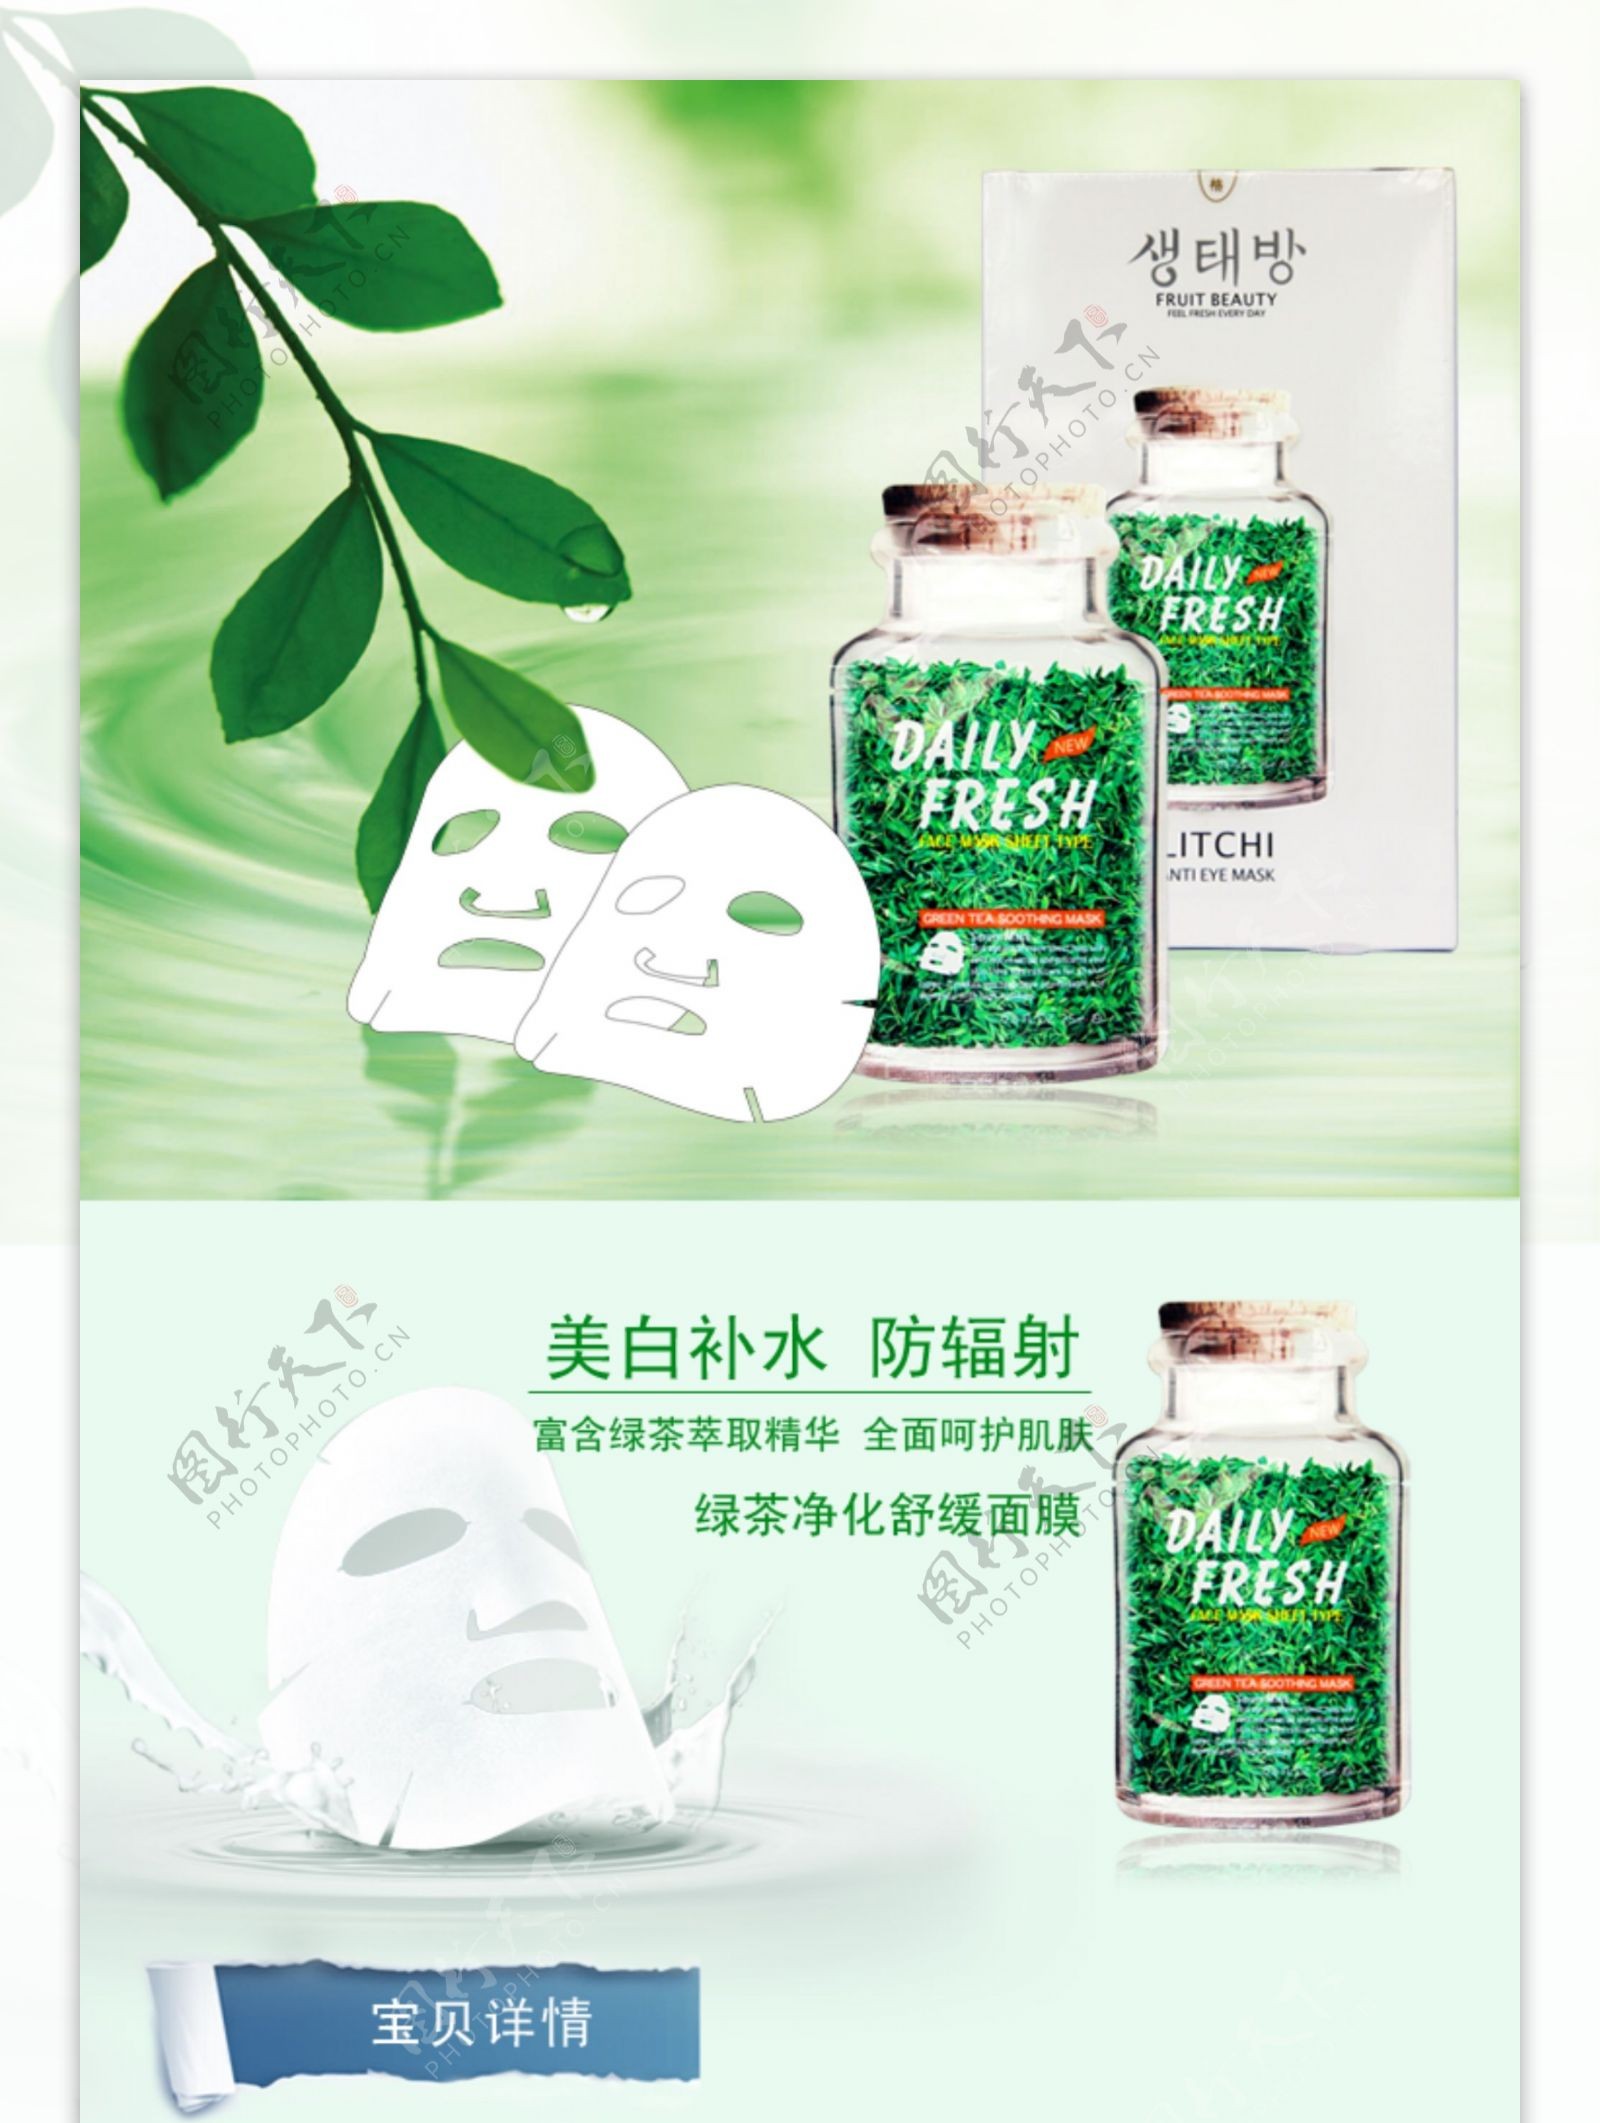 绿茶面膜广告图片